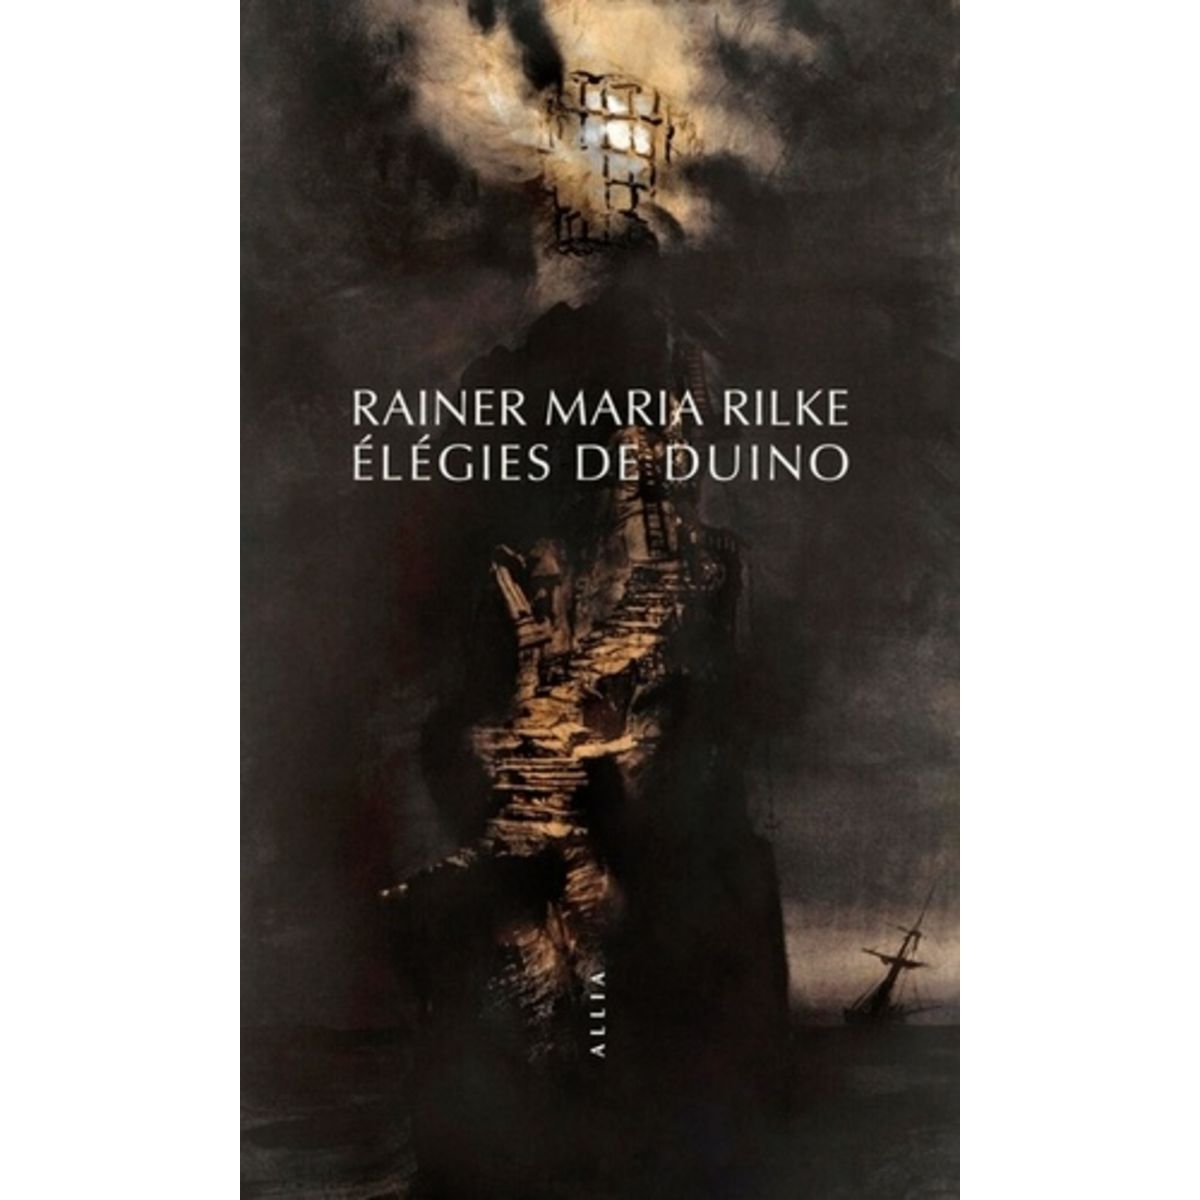  ELEGIES DE DUINO, Rilke Rainer Maria